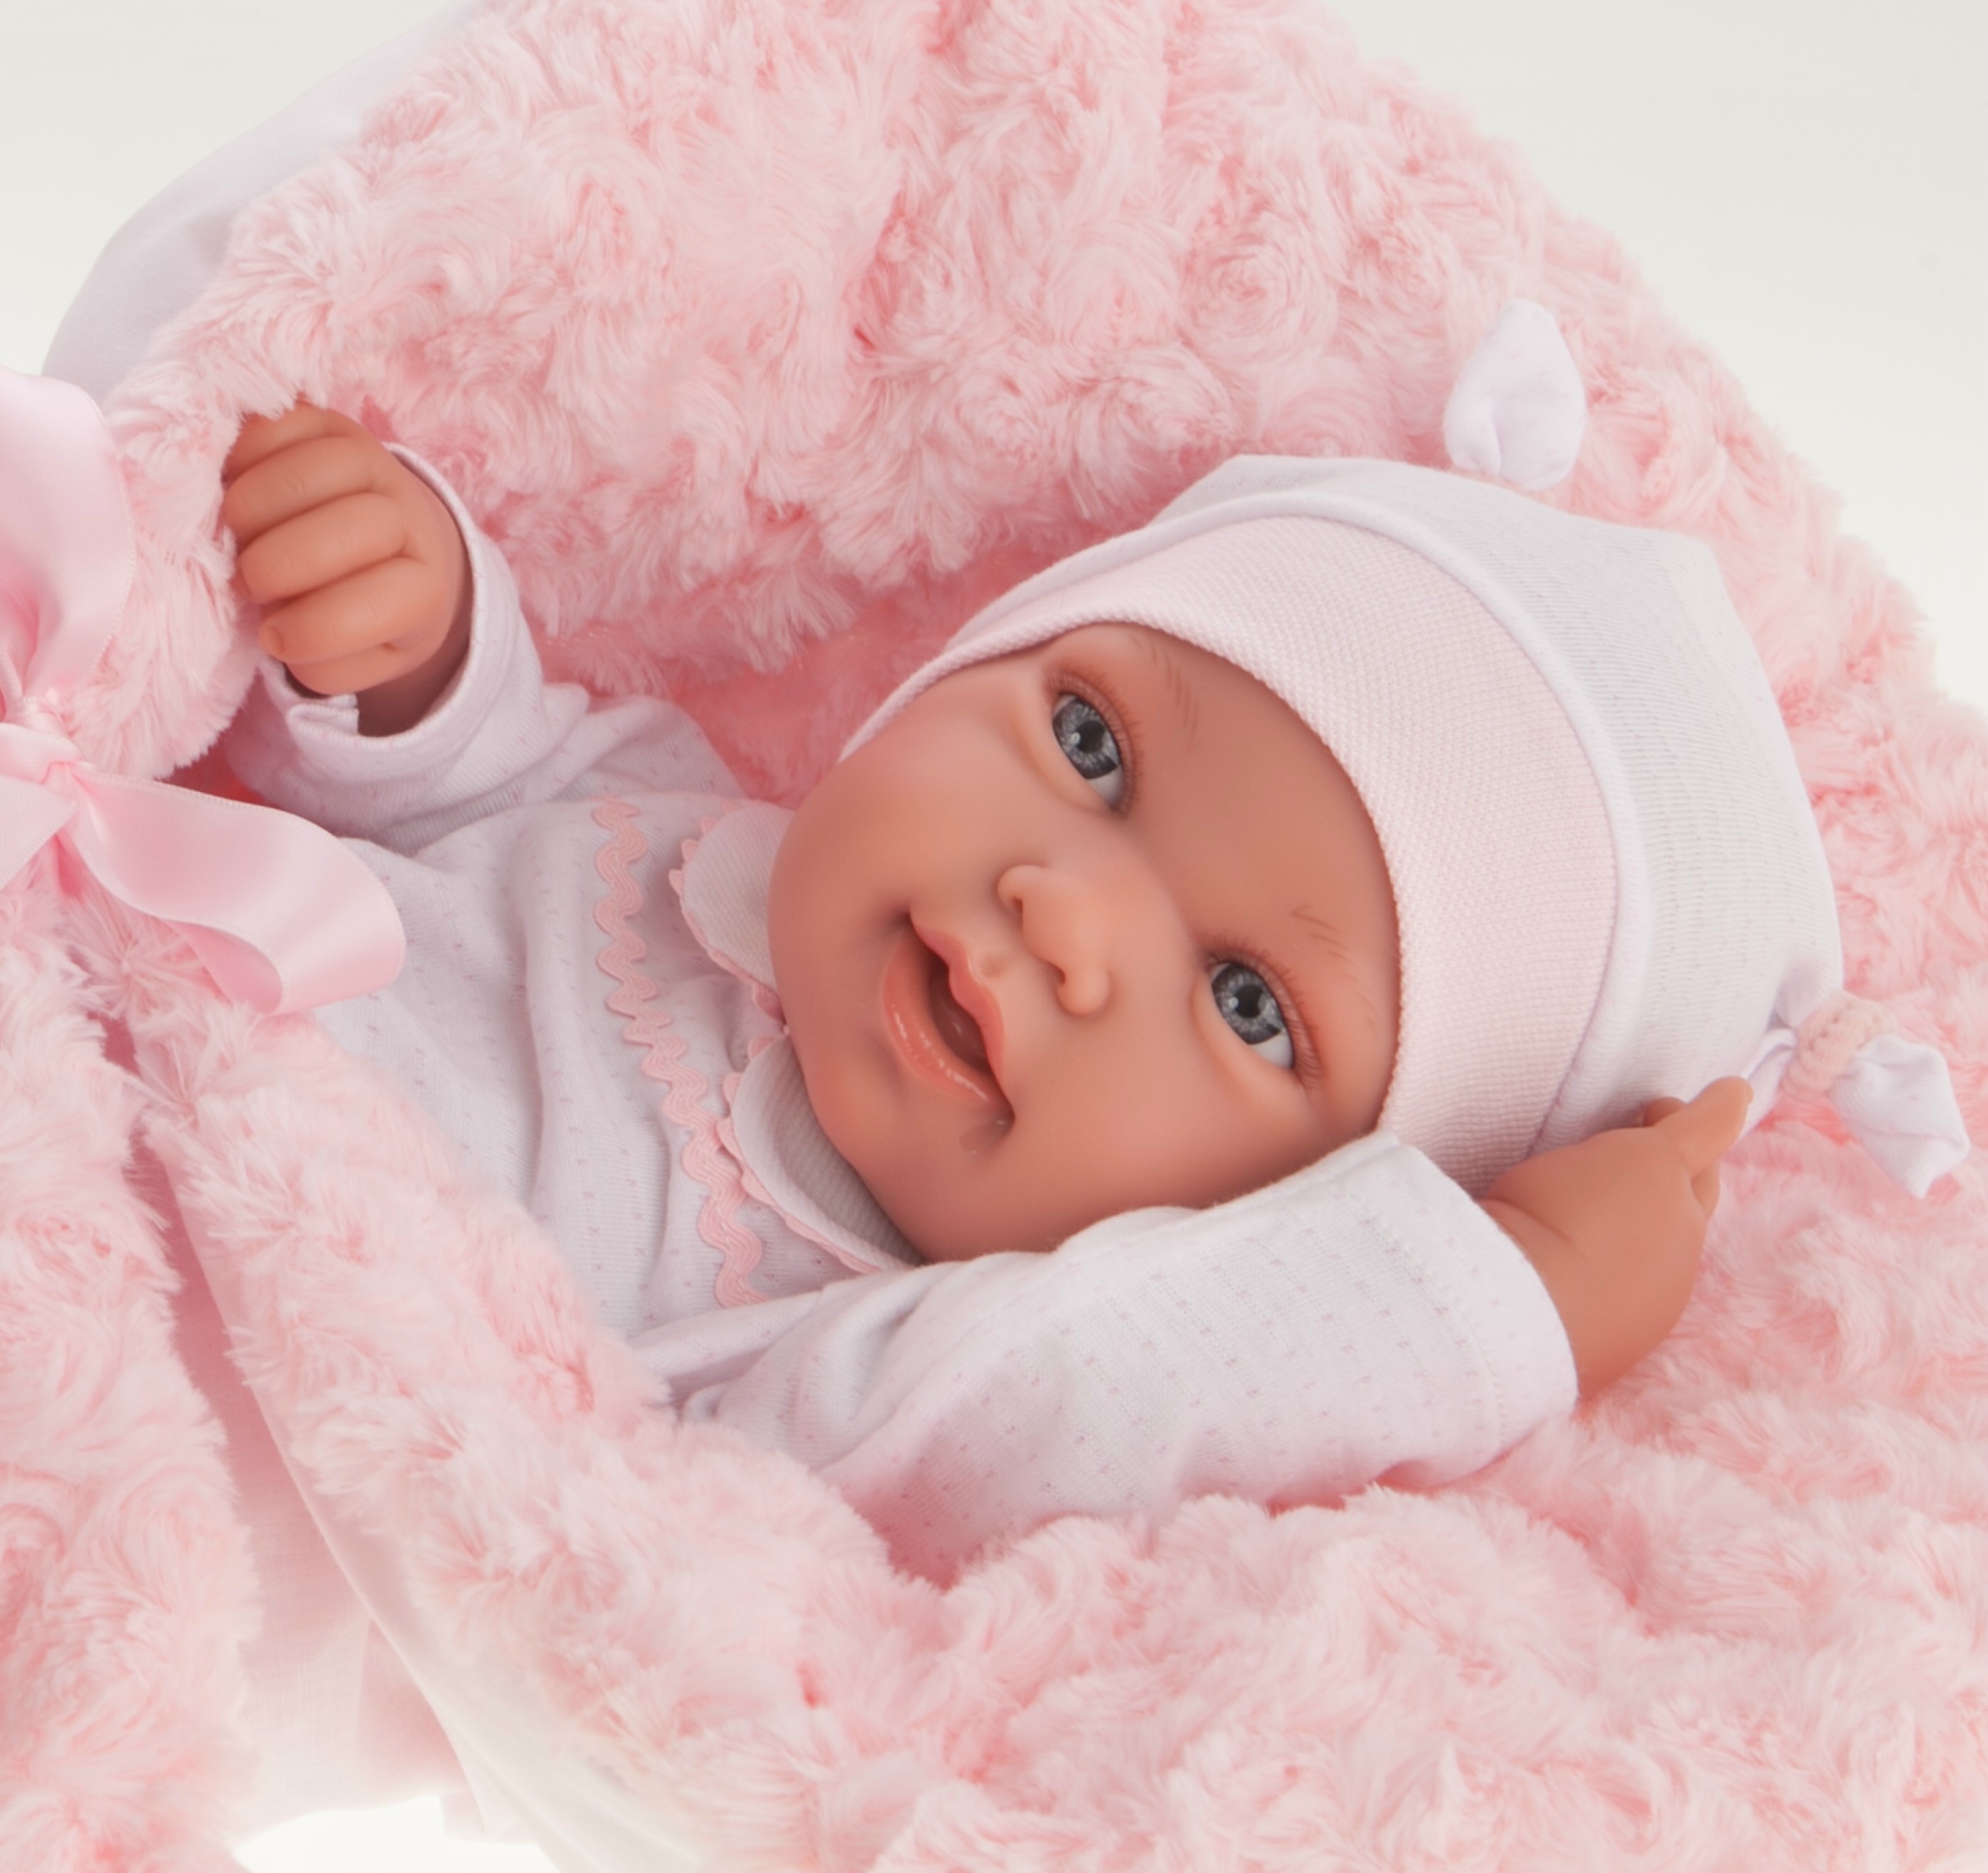 AJ03a Antonio levensechte babypop meisje glimlachend met kleding deken en speen 43 cm – Selintoys